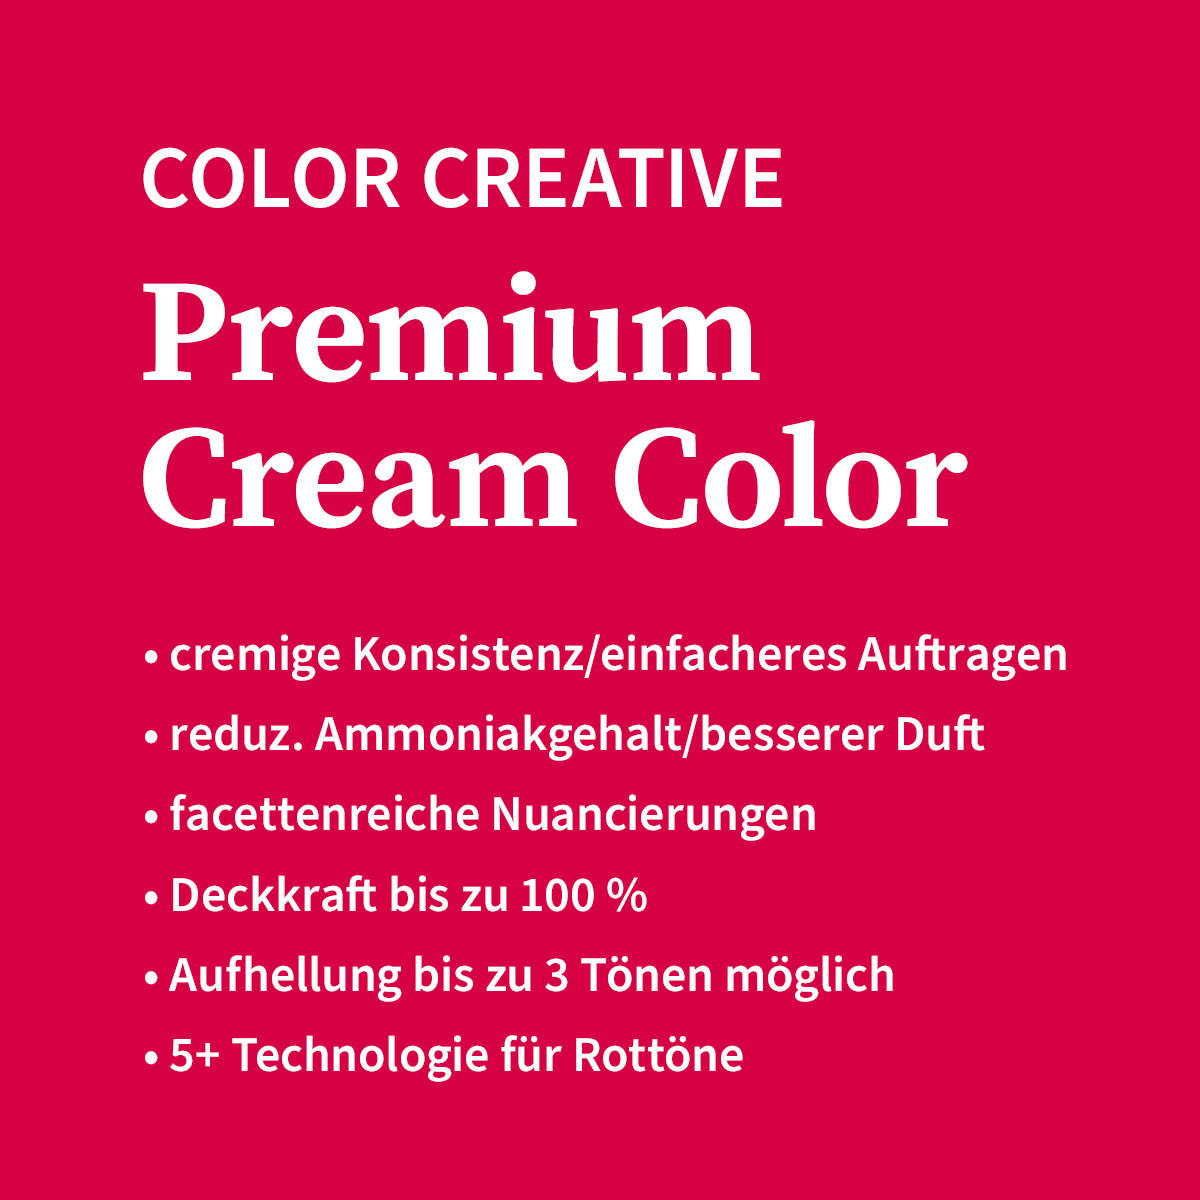 Basler Color Creative Premium Cream Color 7/6 mittelblond violett, Tube 60 ml - 4